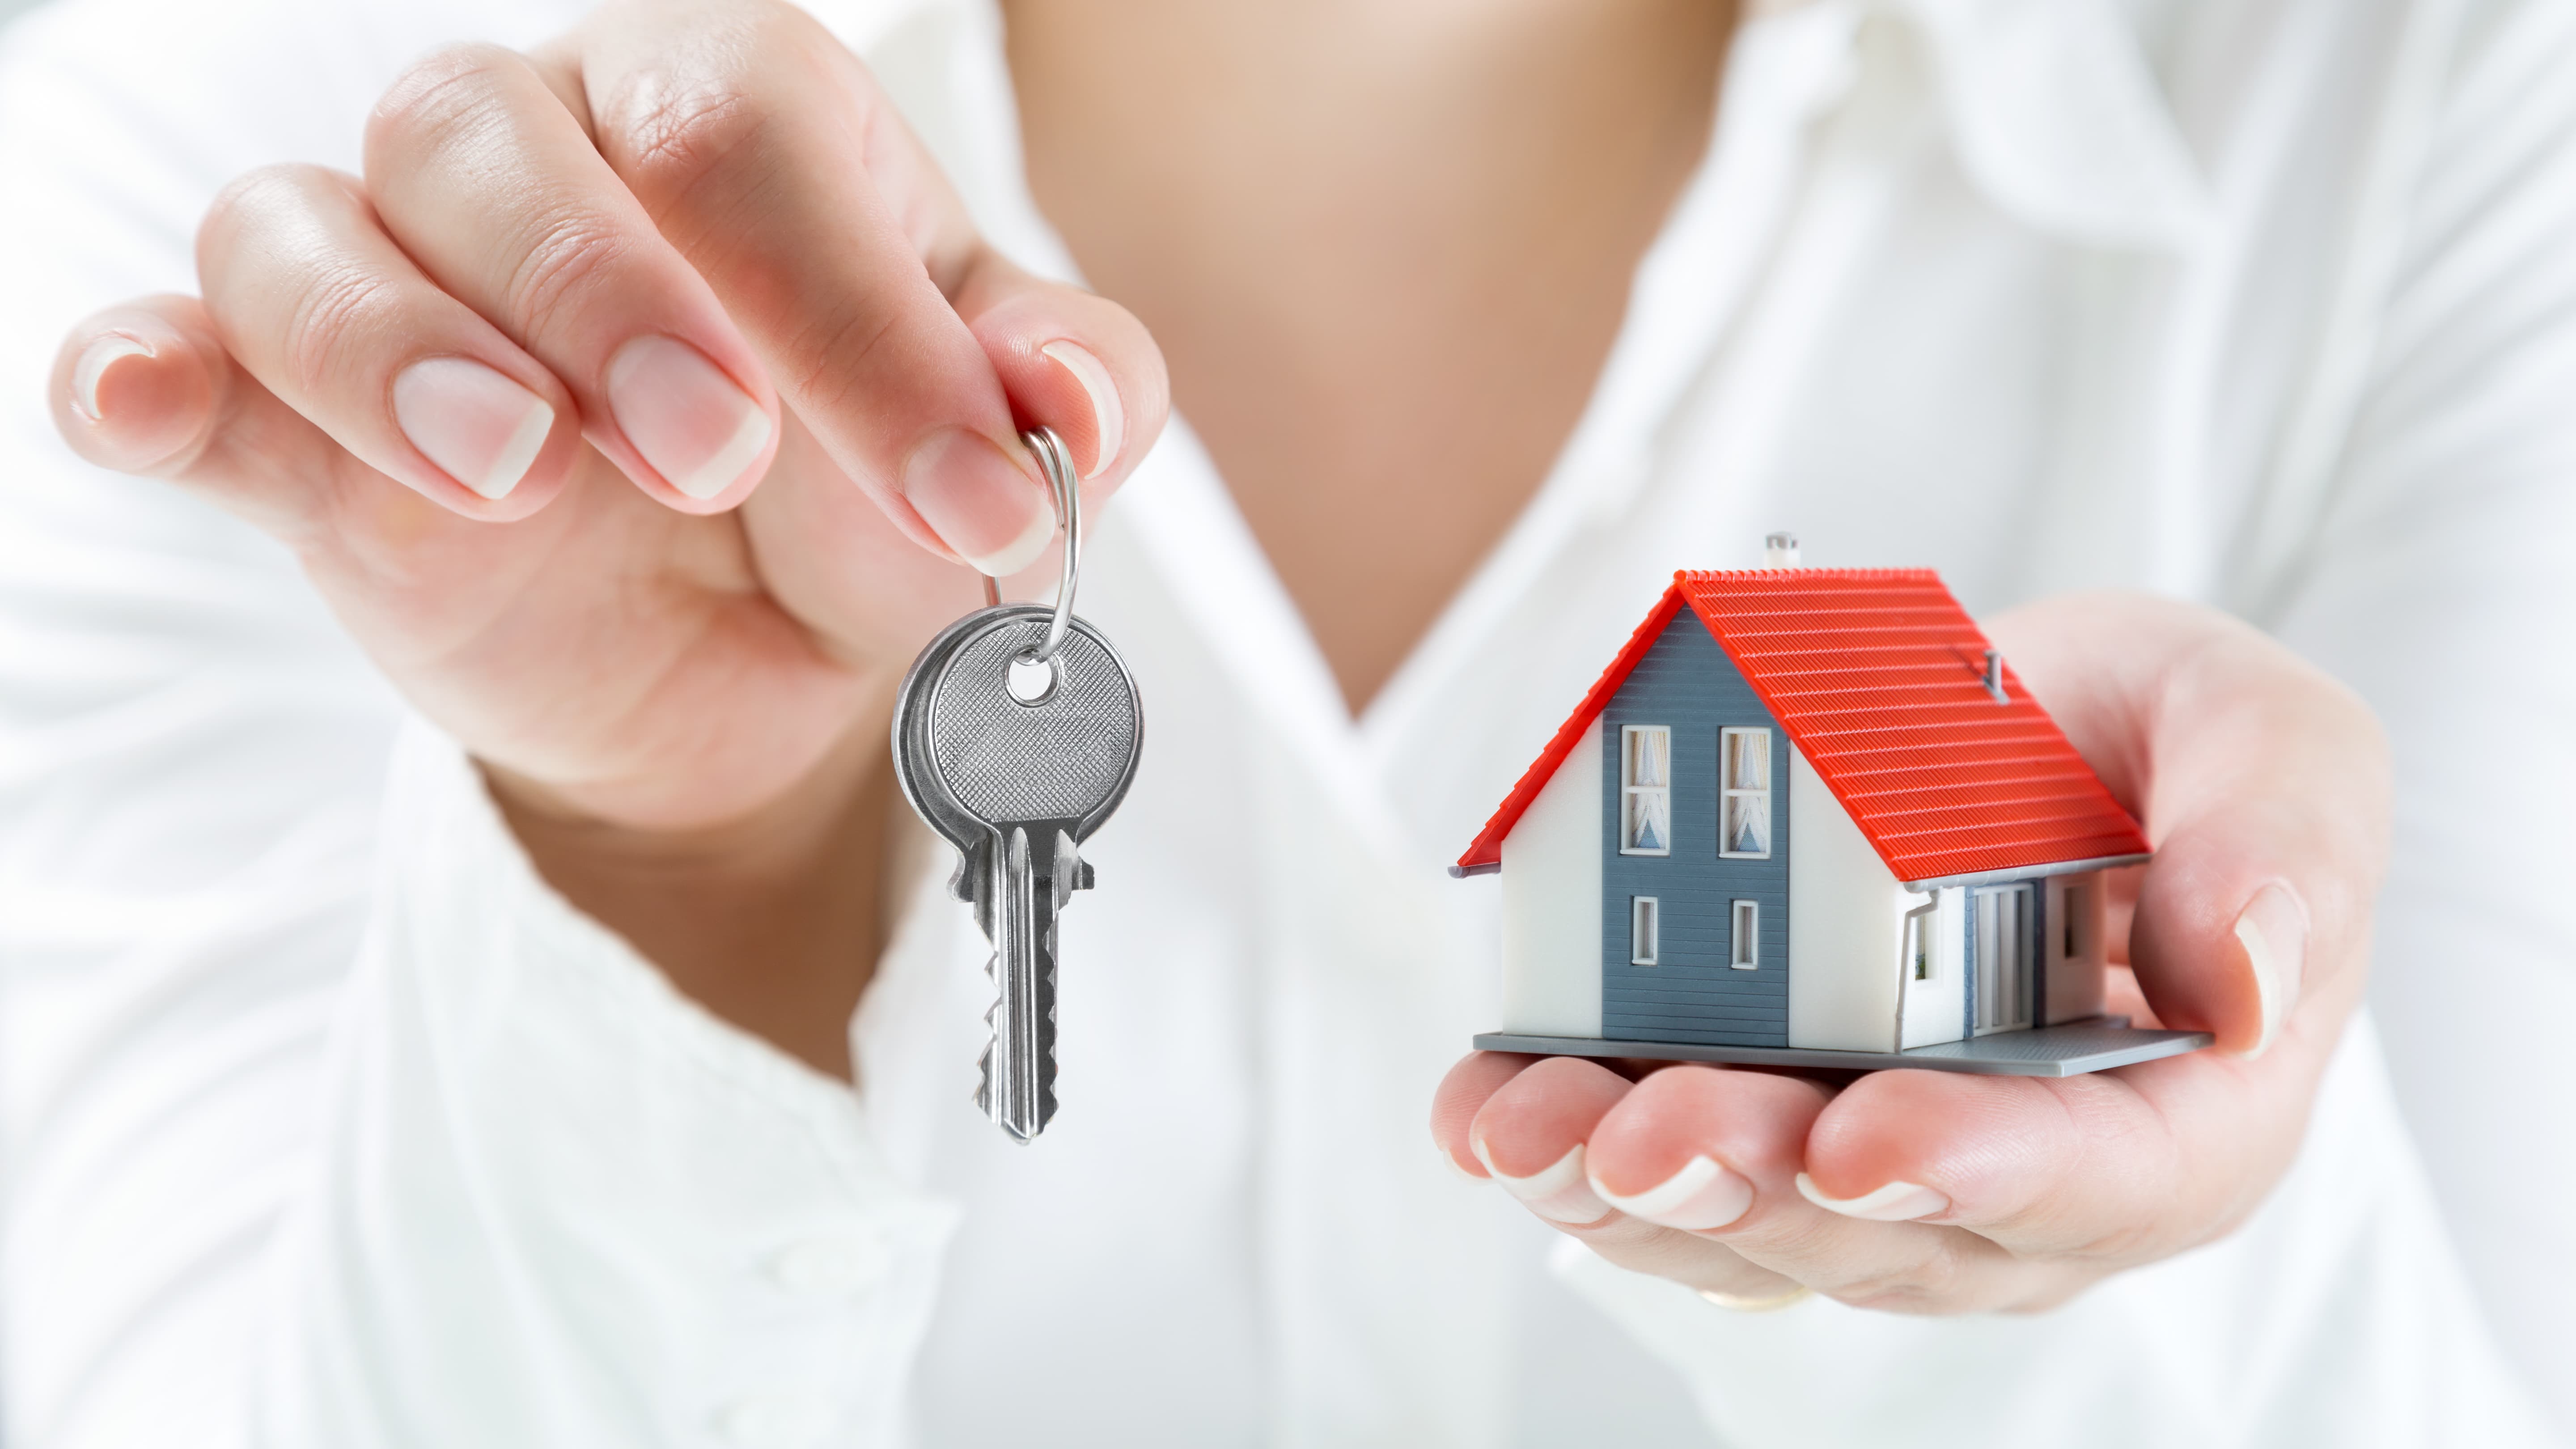 Услуги покупки недвижимости. Домик с ключами. Ключи от квартиры в руке. «Ключи к дому». Недвижимость.